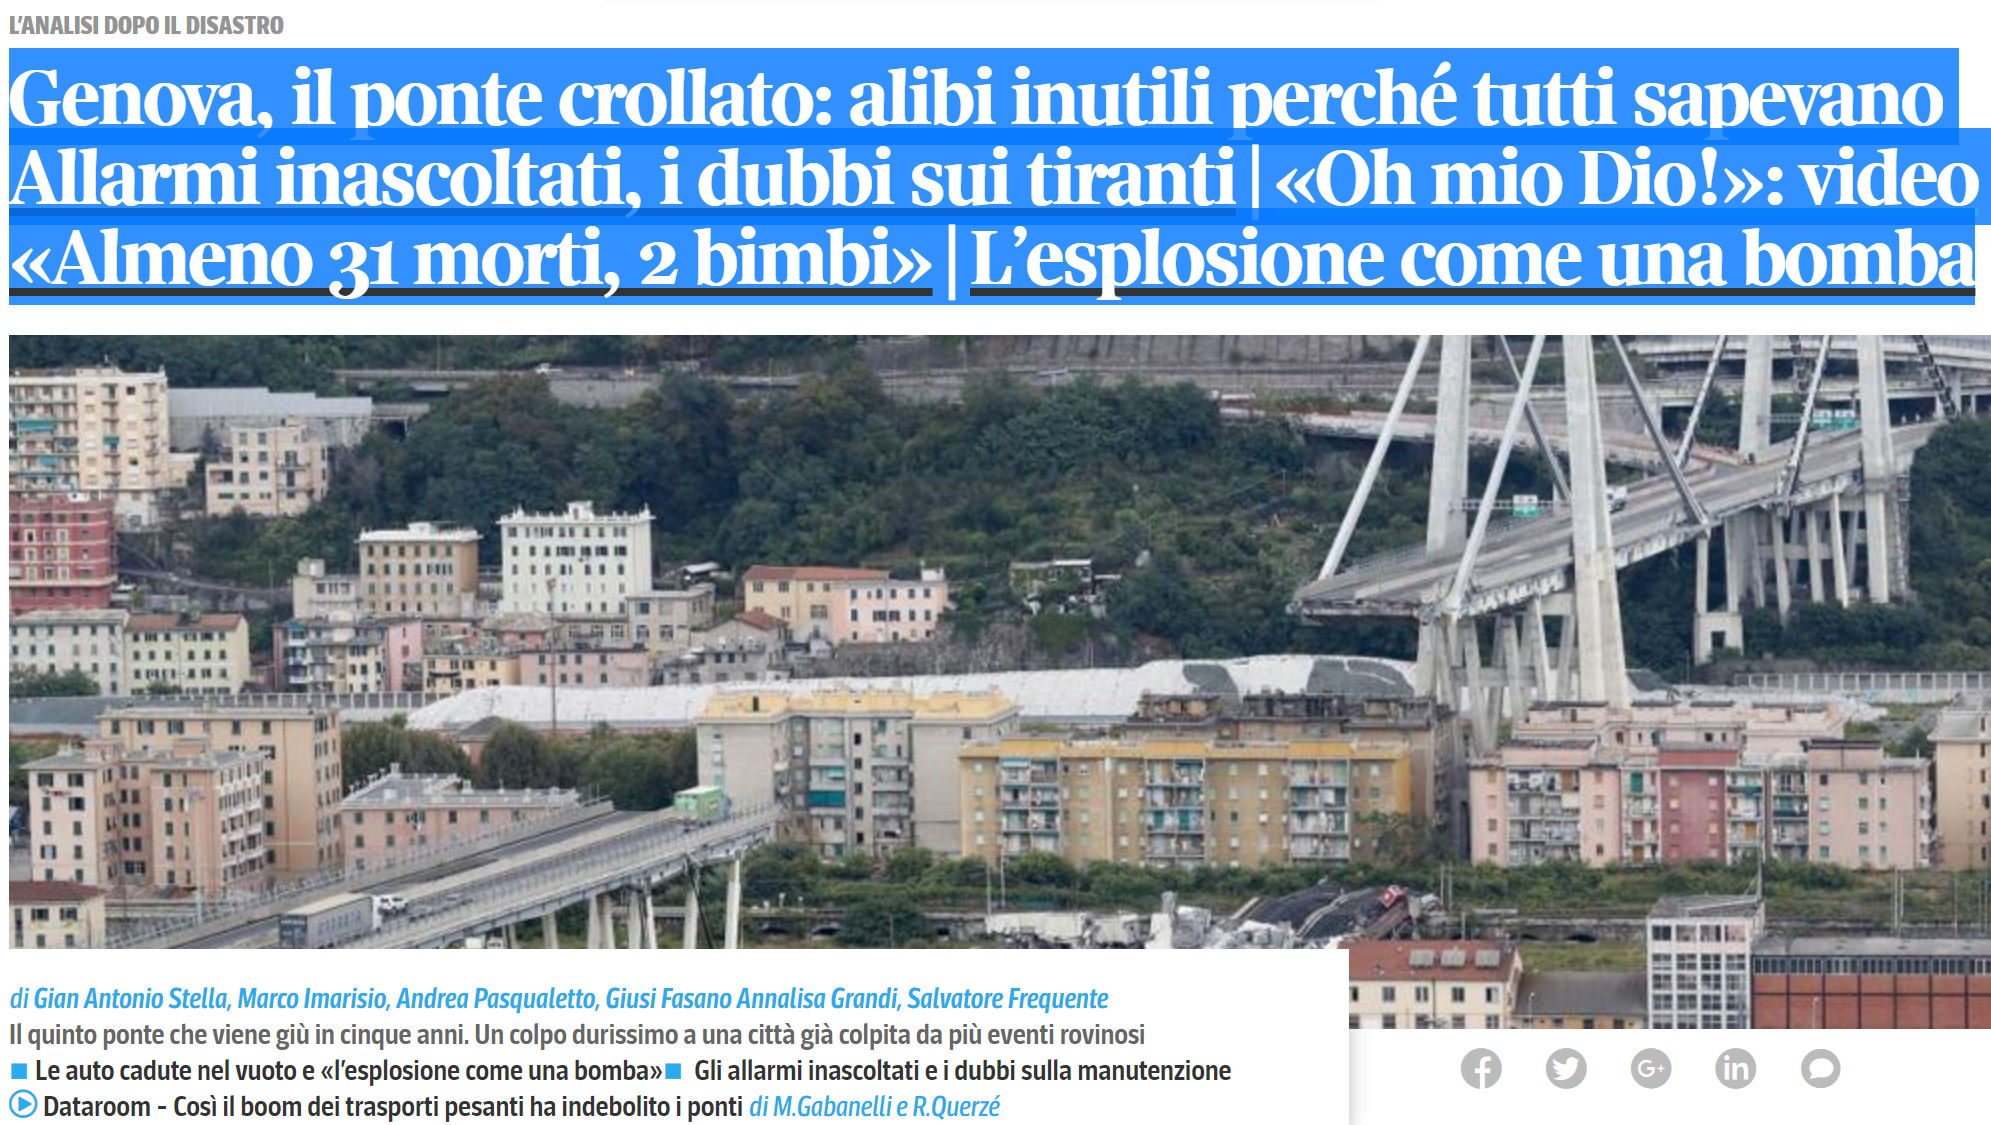 Colapso da ponte de Génova: Como é possível? ponte-genova